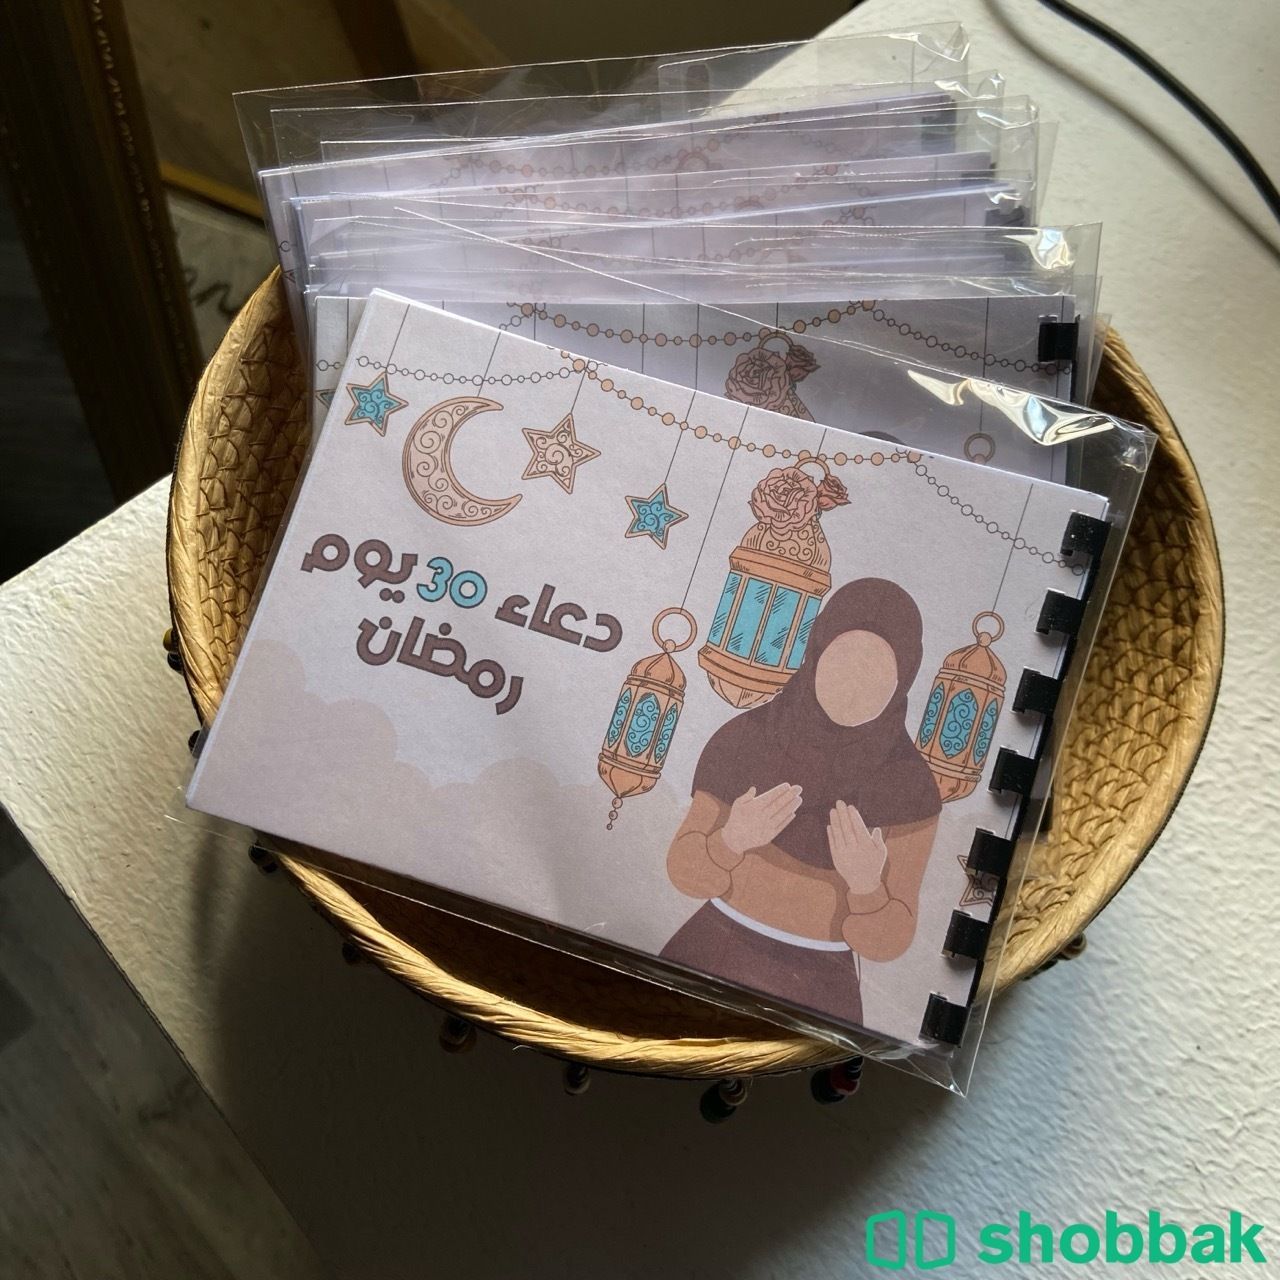 ادعيه رمضان   Shobbak Saudi Arabia